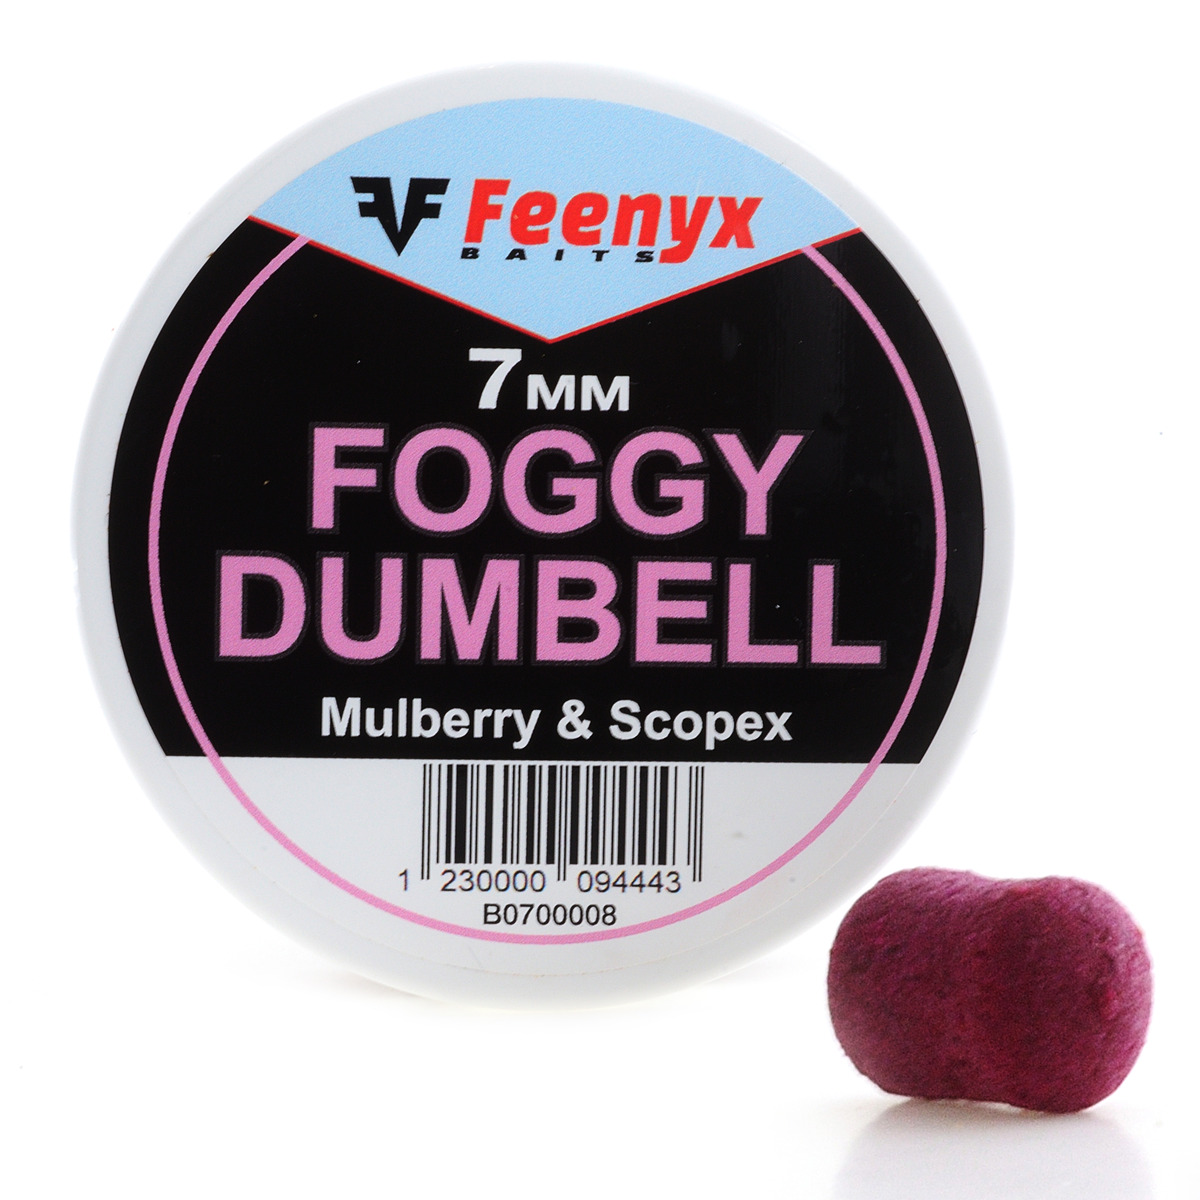 Feenyx Foggy Dumbell Mulberry & Scopex - 7 mm